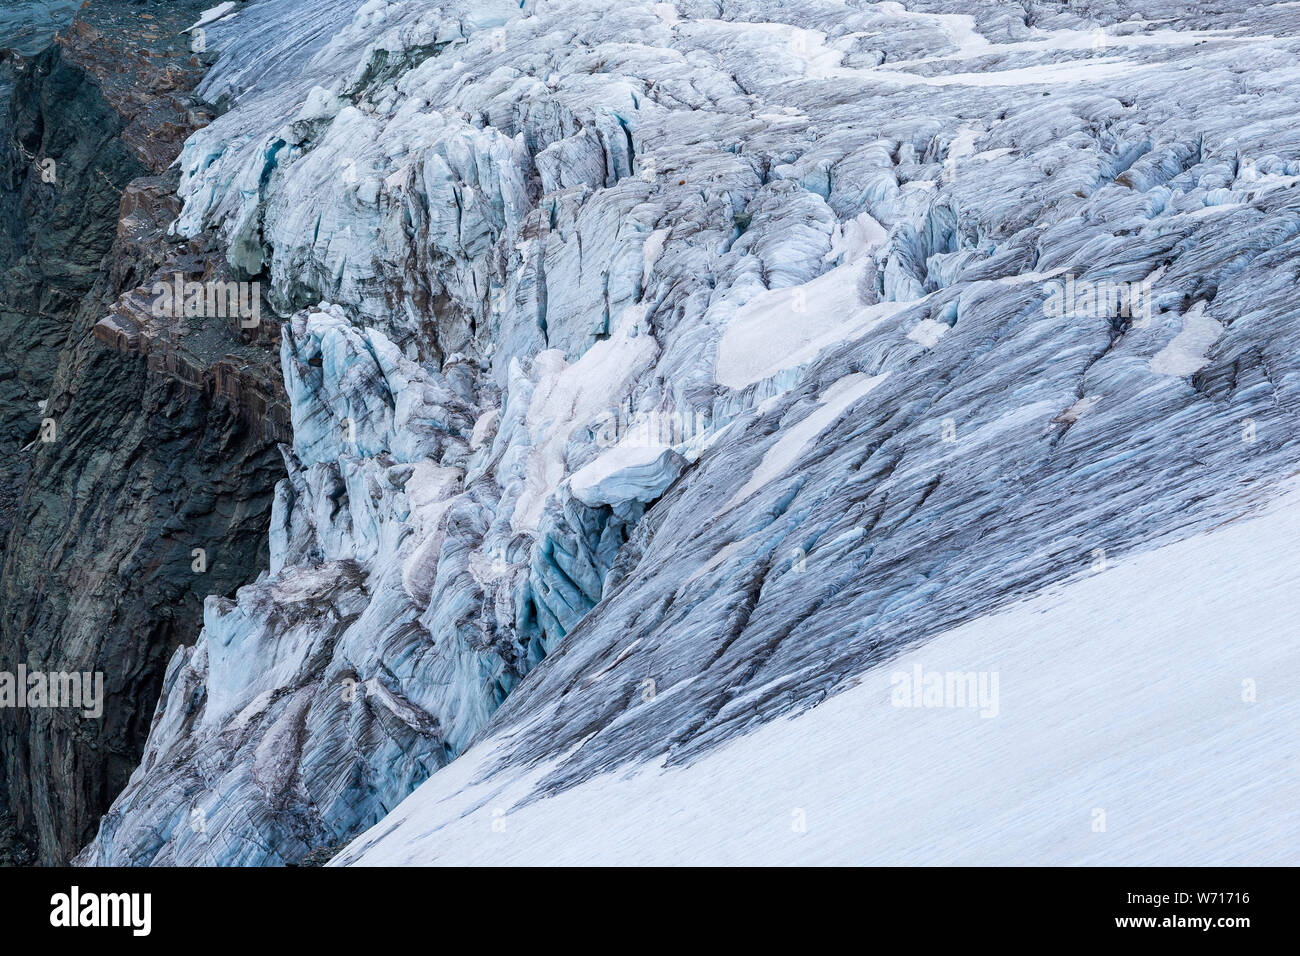 Glacier of Glockner mountain massif. Großglockner. Grossglockner. Austrian Alps. Europe. Stock Photo